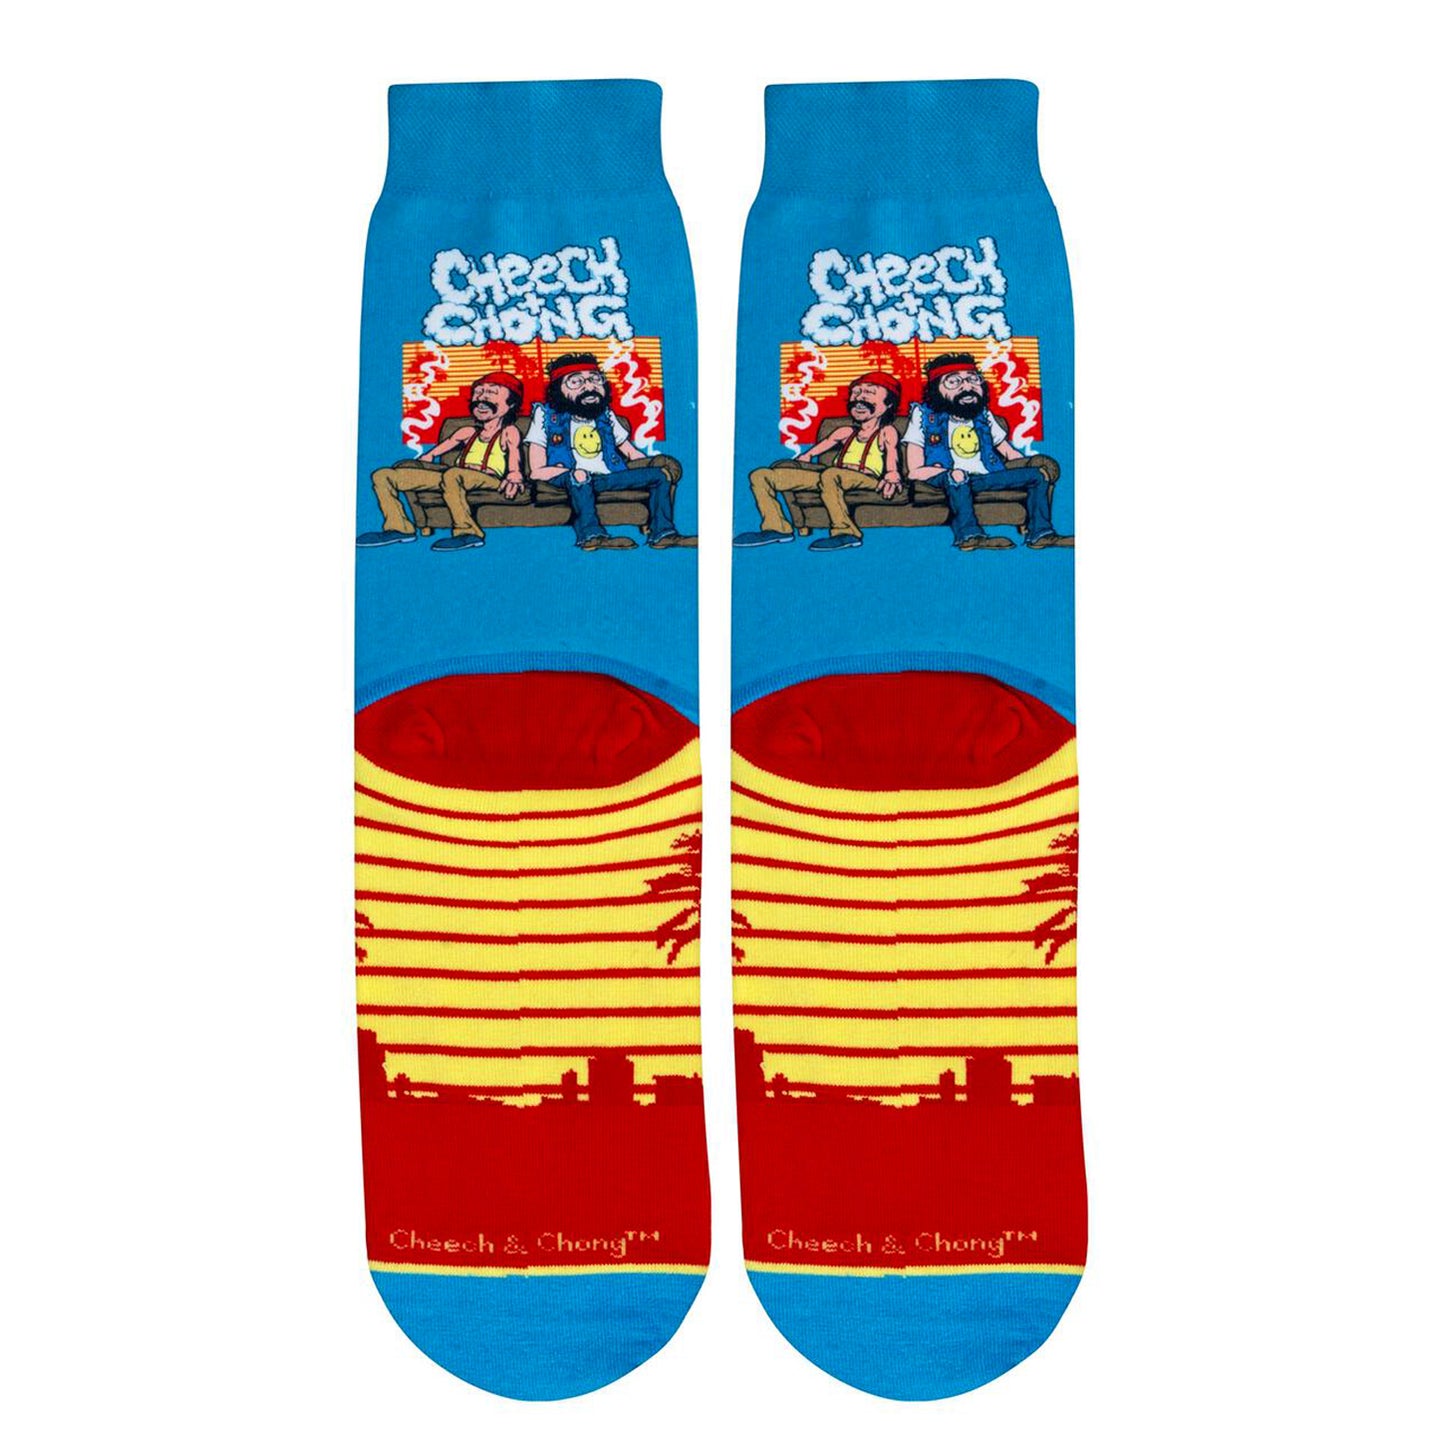 Odd Sox Men's Crew Socks - Sunset (Cheech & Chong)